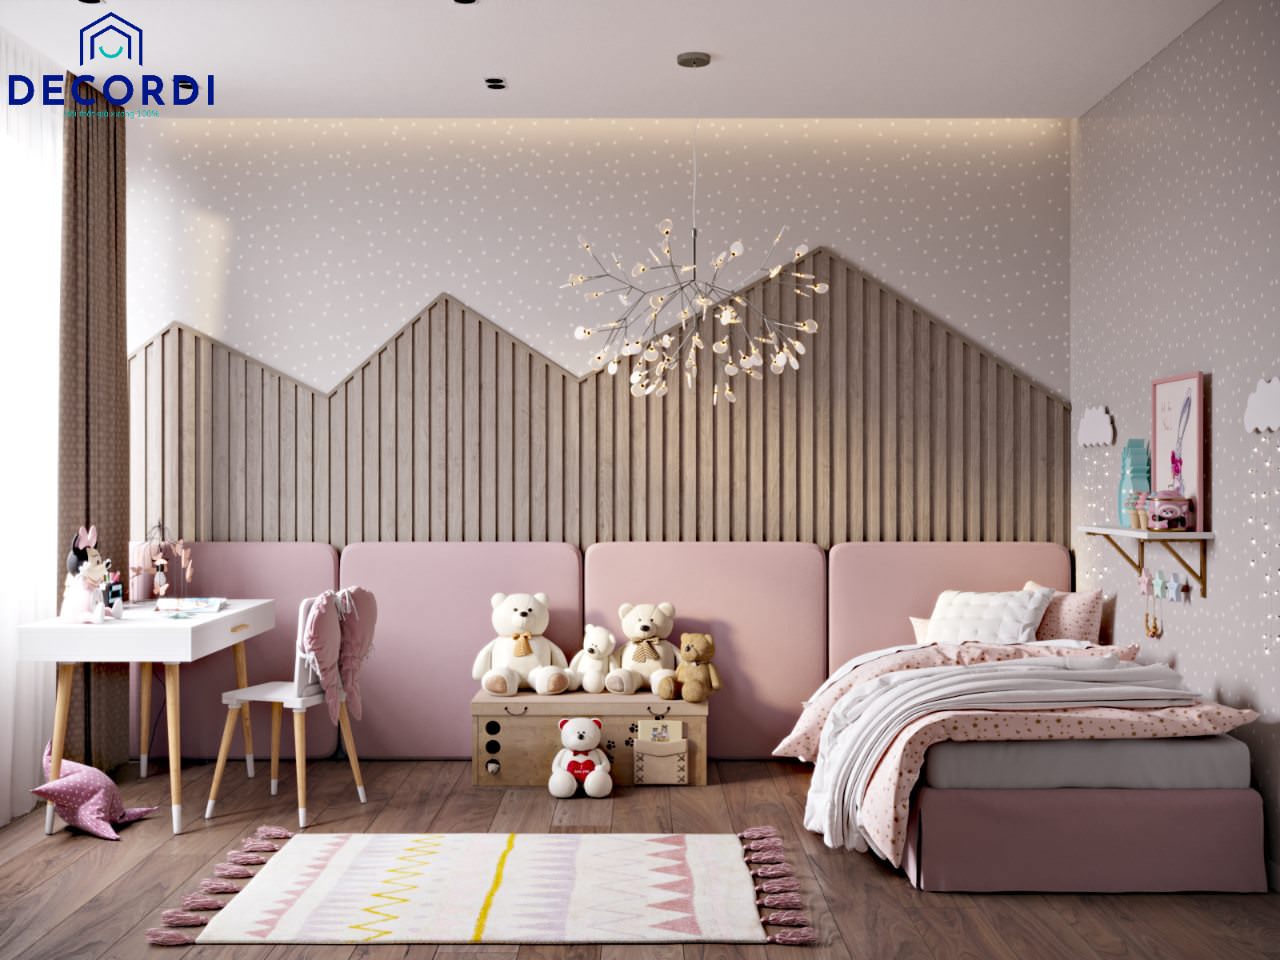 Thiết kế nội thất phòng ngủ dễ thương với tone màu hồng chủ đạo được trang trí bởi những món đồ yêu thích của bé